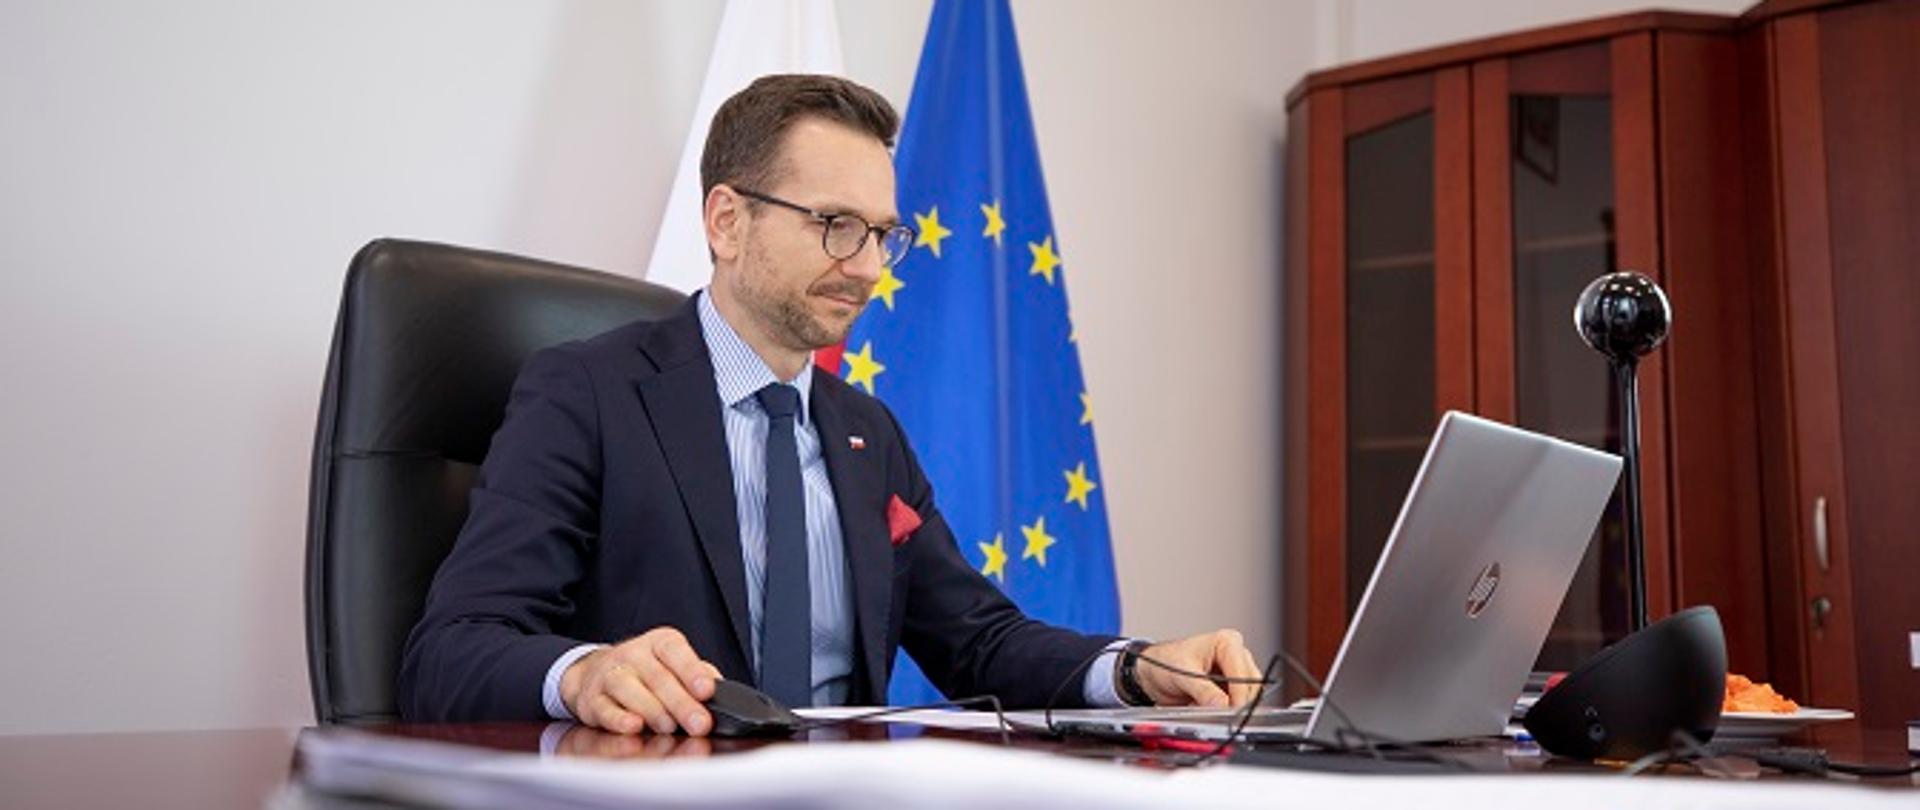 Wiceminister Waldemar Buda siedzi przy biurku przed laptopem. Za plecami stoją flagi Polski i Unii Europejskiej.